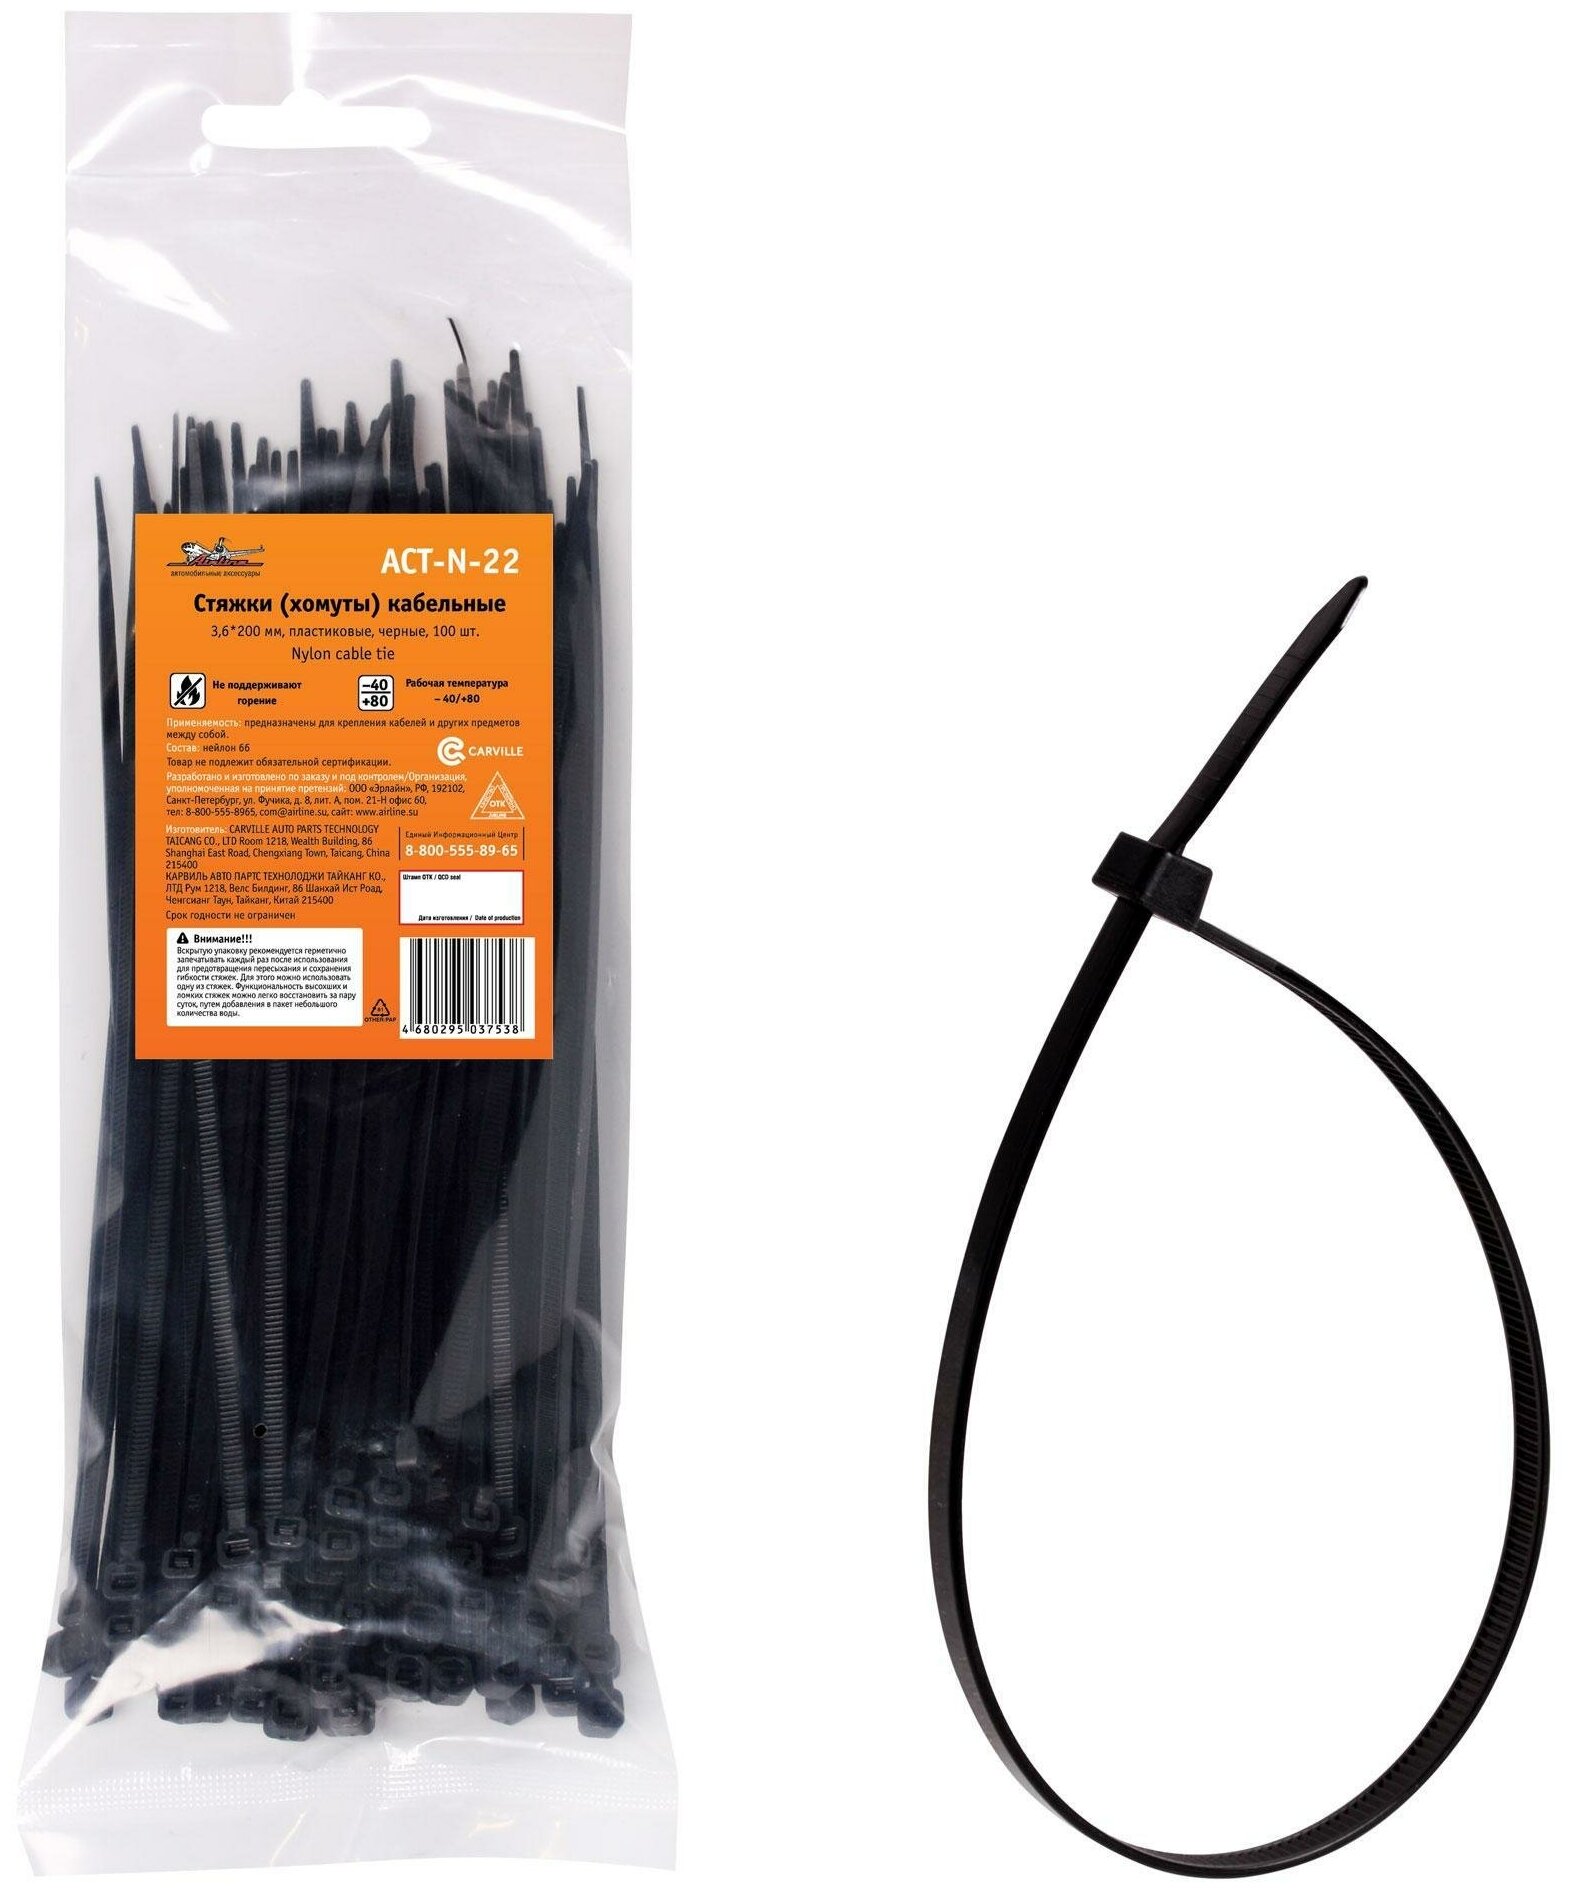 Стяжки (хомуты) кабельные 3 6*200 мм пластиковые черные 100 шт AIRLINE ACTN22 (1 шт.)